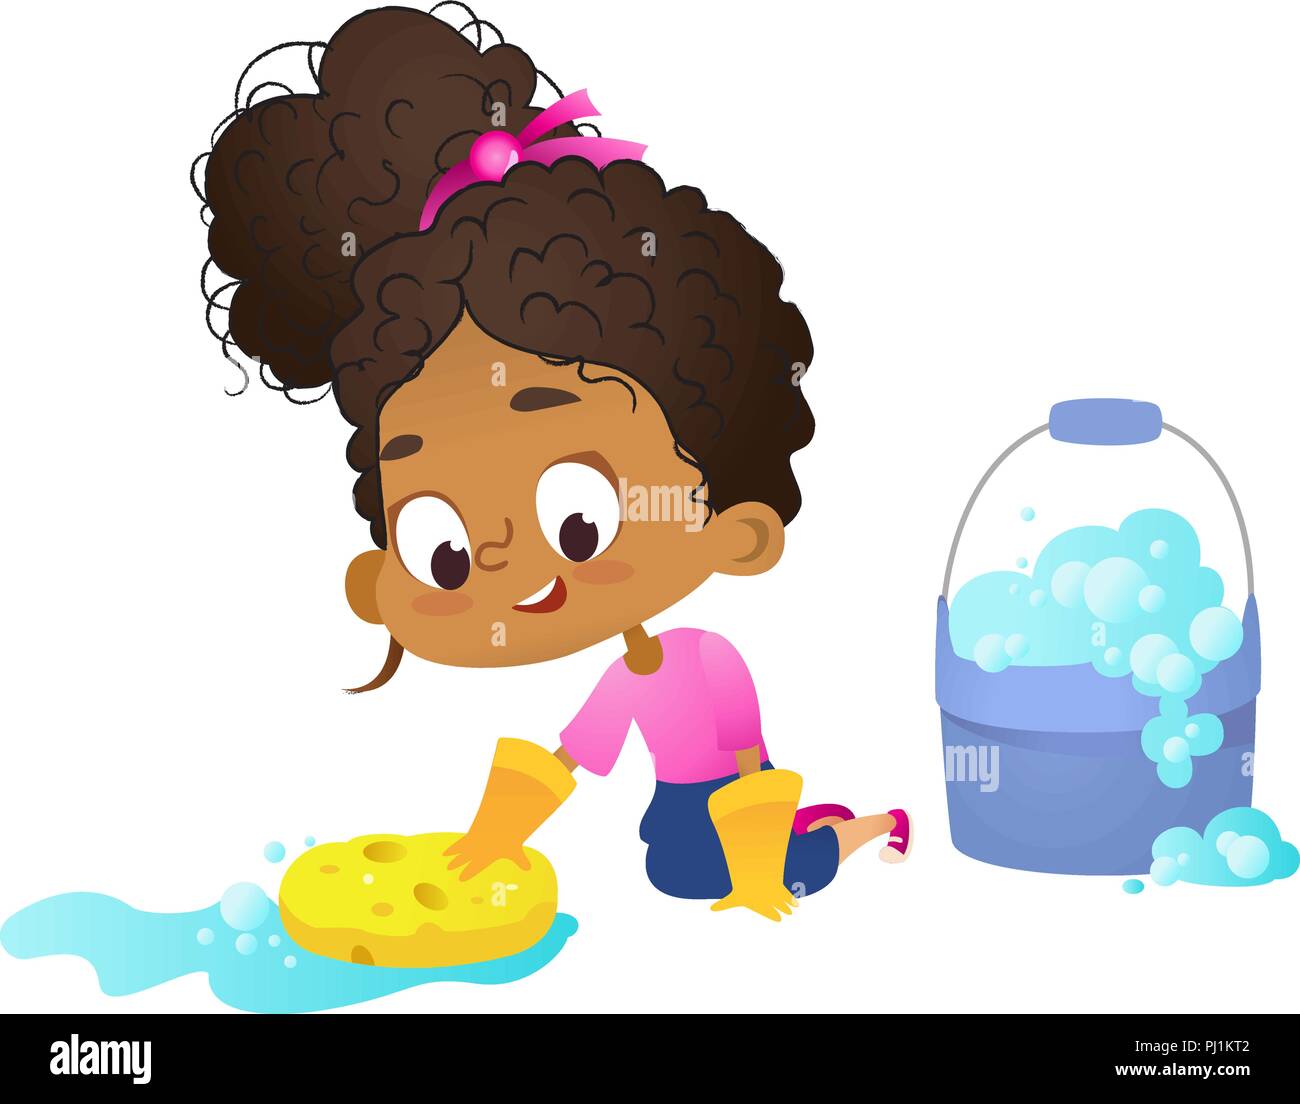 El concepto de que los niños hacen las rutinas domésticas - Little Girl afroamericana trapear el piso waering guantes de látex, concepto de Montessori involucrarse en actividades educativas. Ilustración vectorial de dibujos animados Ilustración del Vector